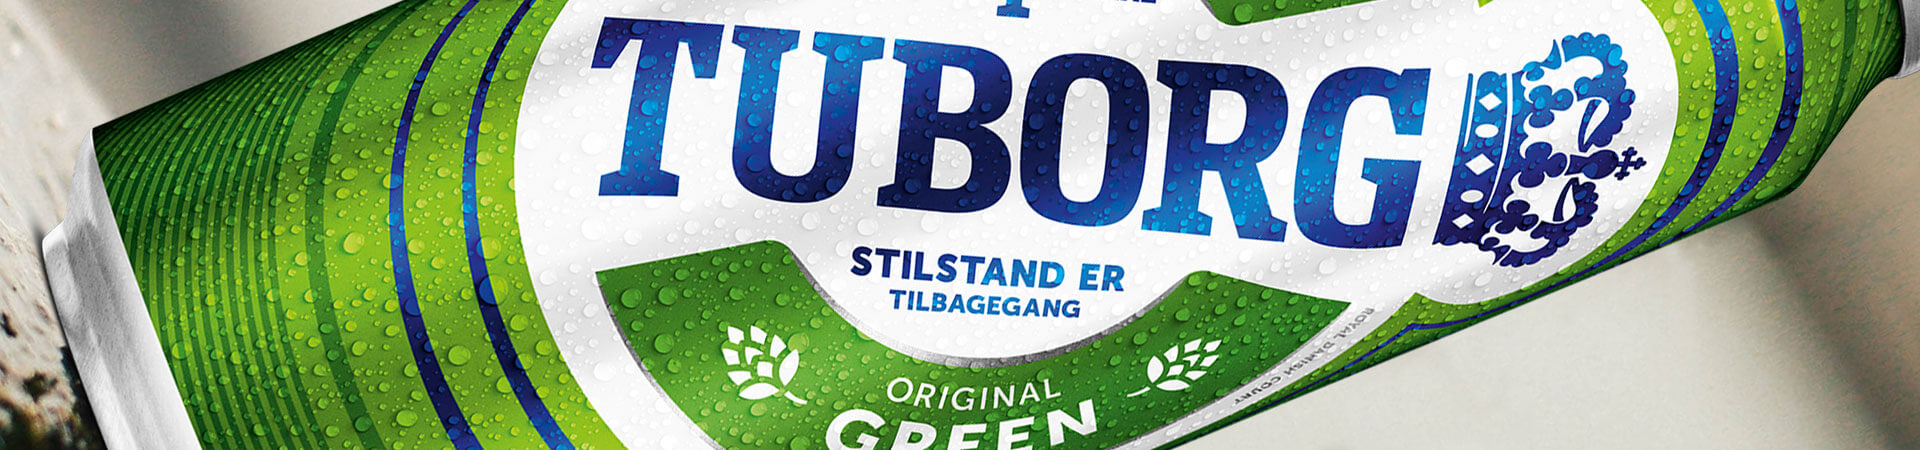 bottle label of tuborg pilsner beer